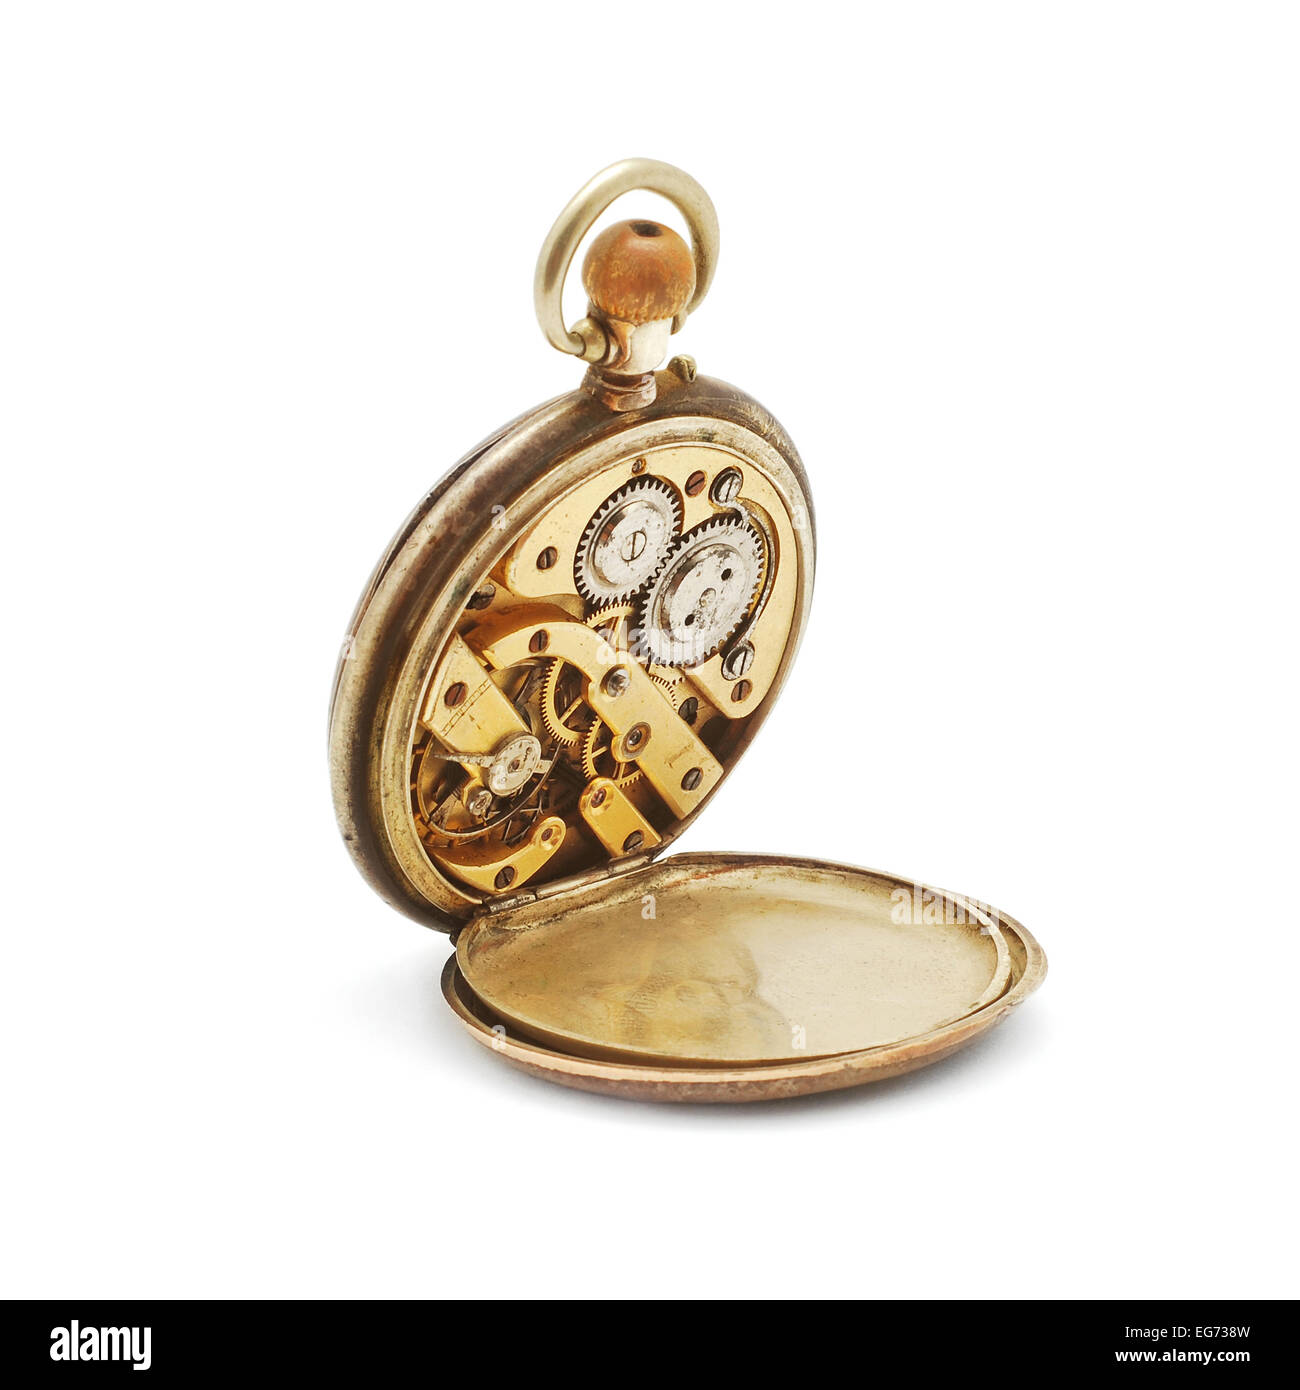 Reloj/mecanismo - Reloj De Bolsillo - Detalle Macro Imagen de archivo -  Imagen de industria, viejo: 115491575